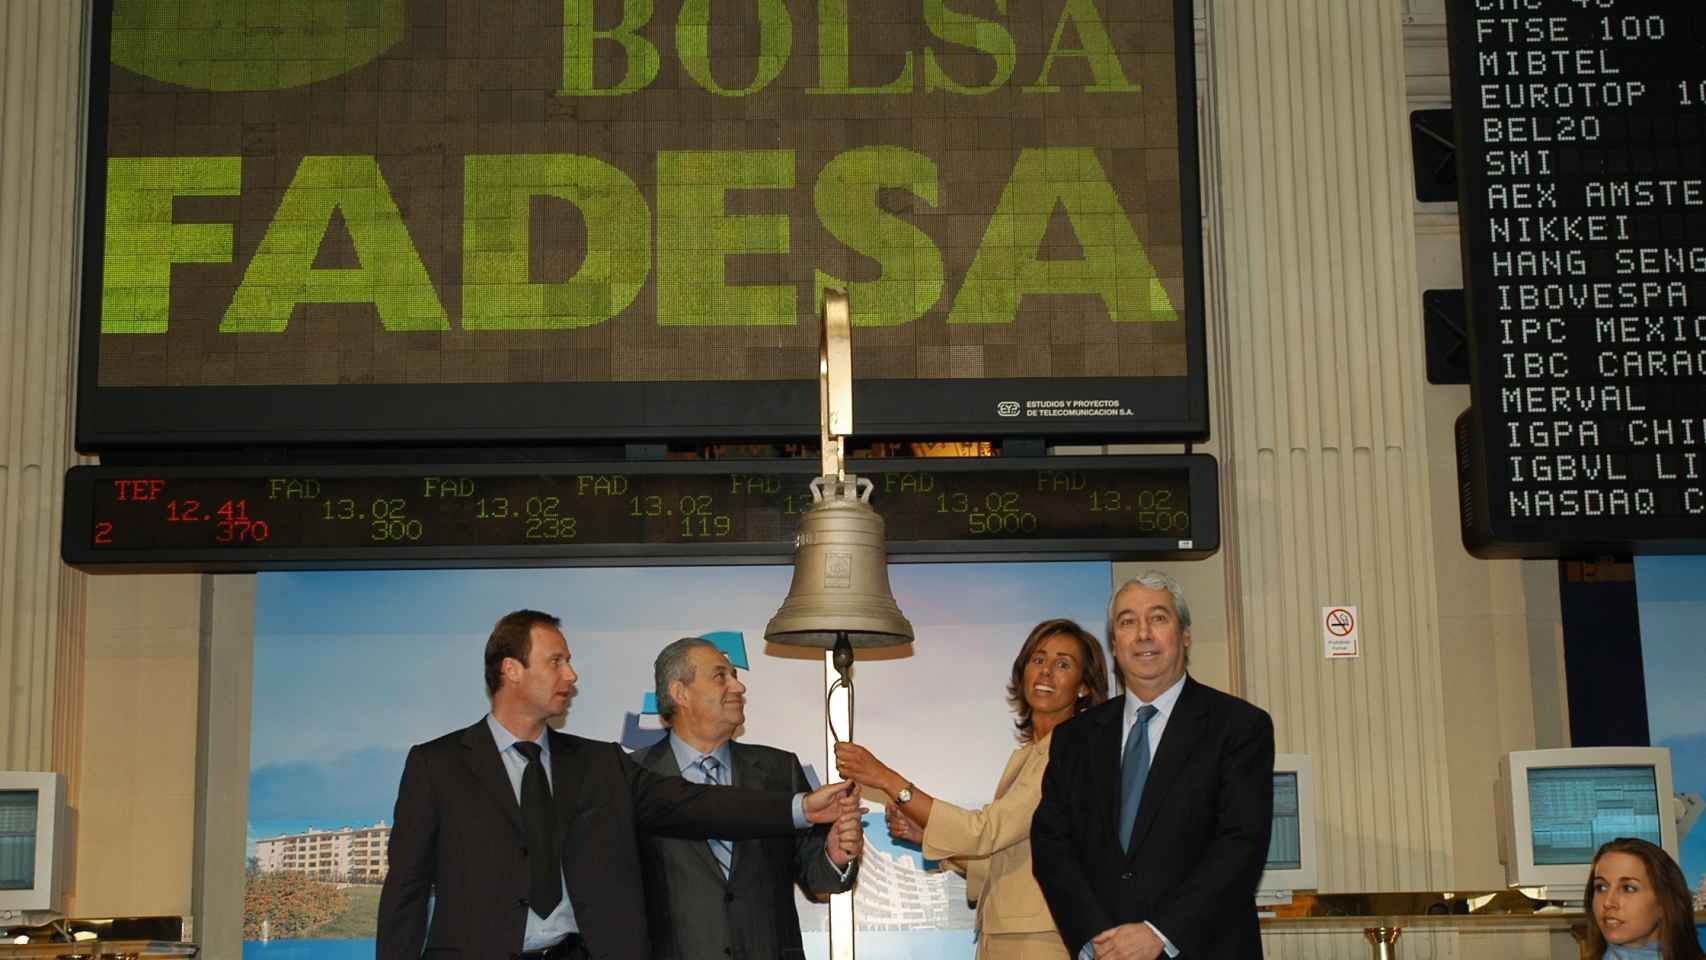 La salida a Bolsa de Fadesa en 2004